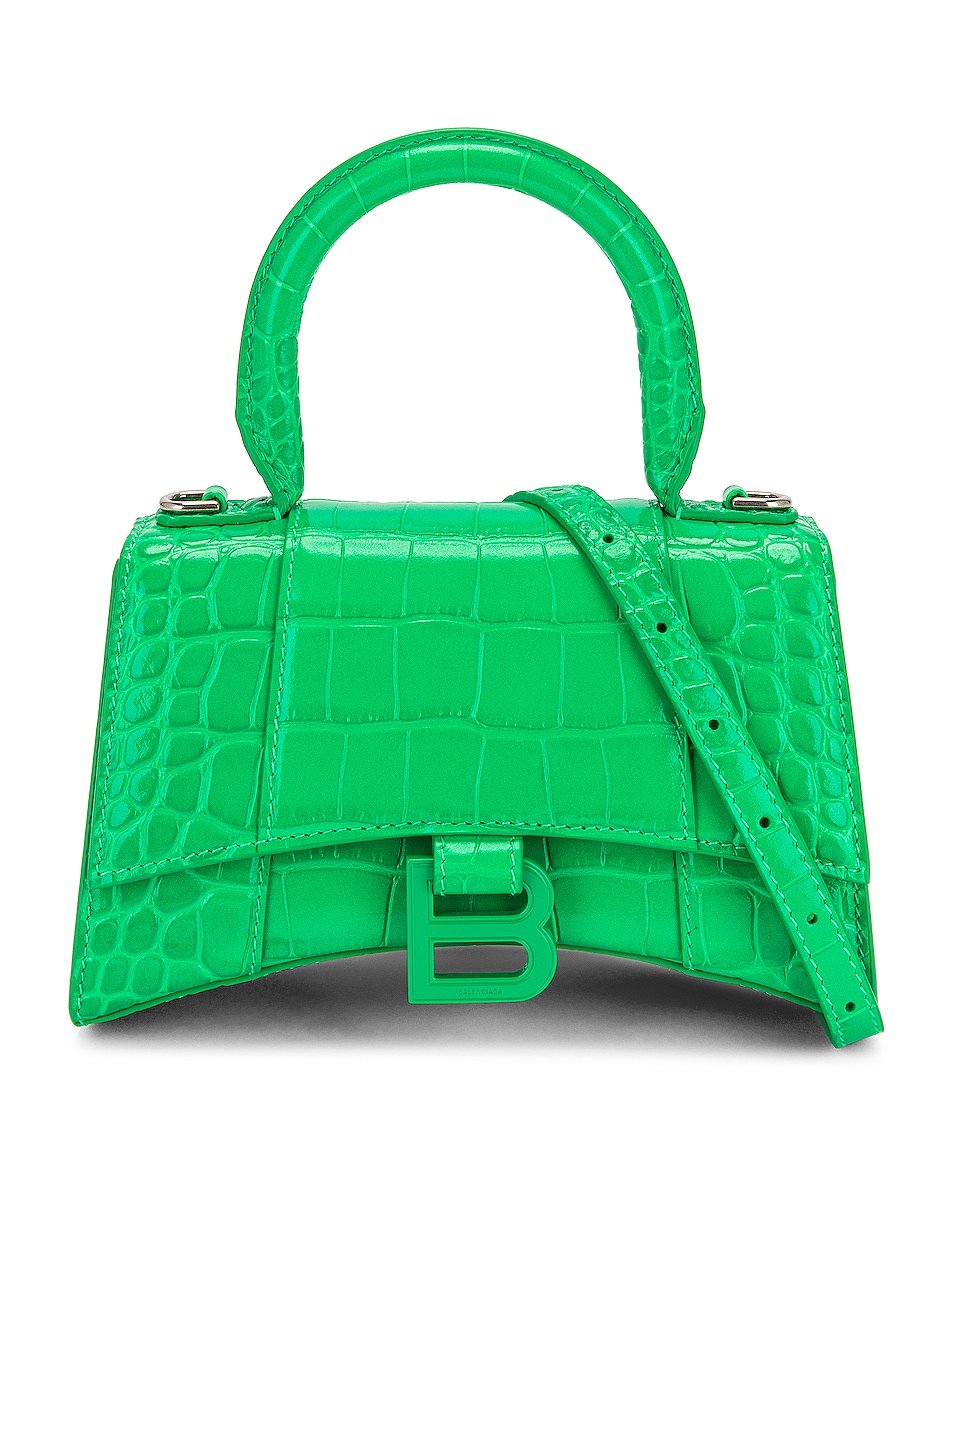 XS Hourglass Top Handle Bag in Green